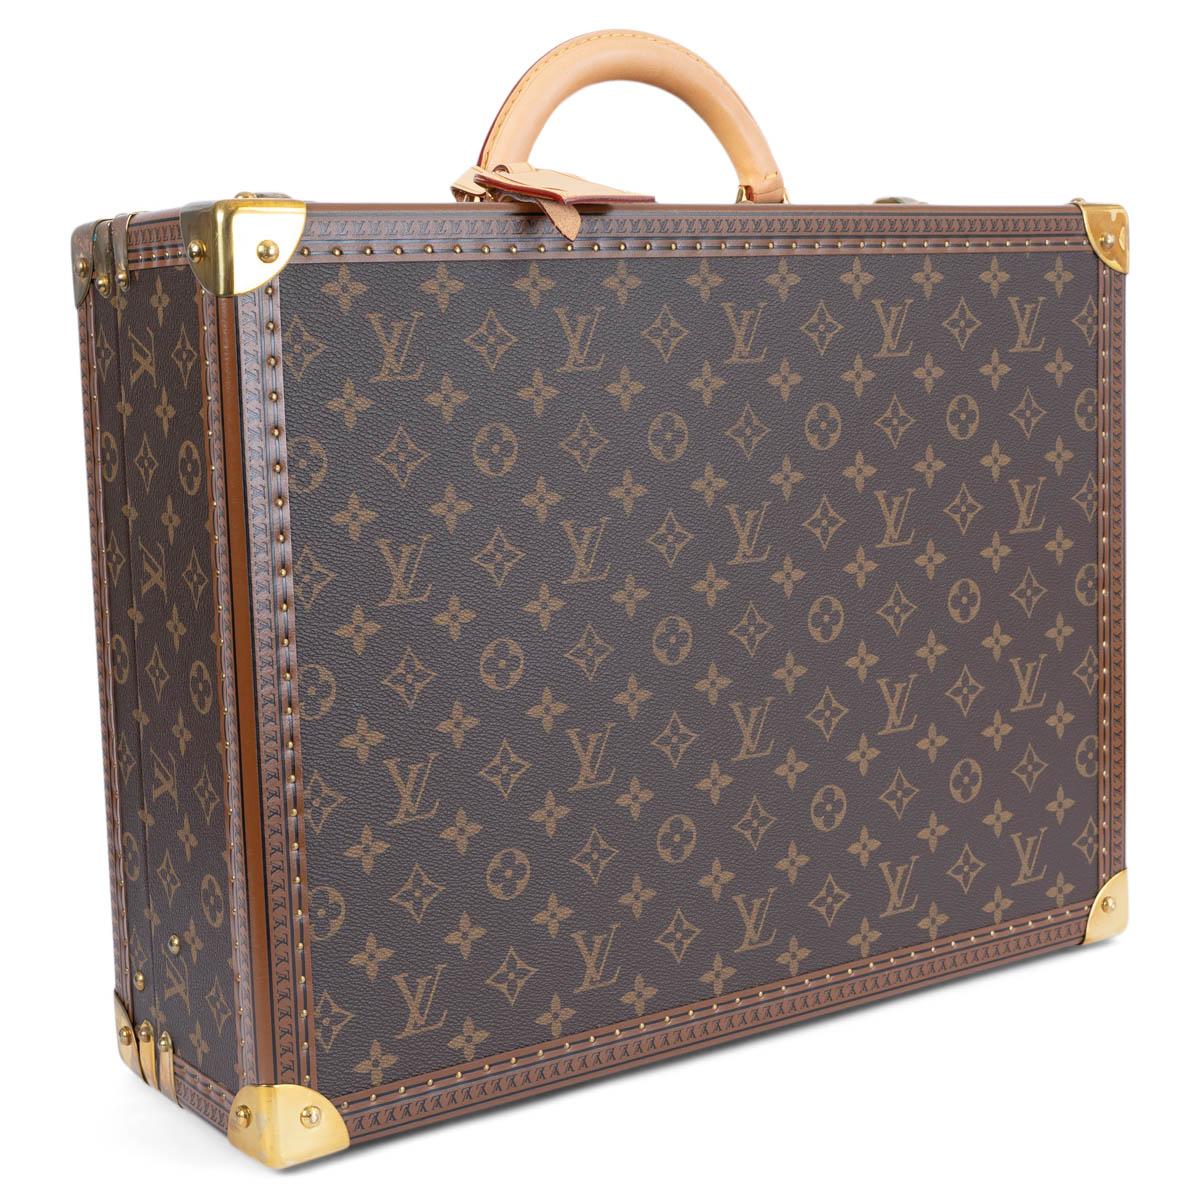 100% authentischer Louis Vuitton Alzer 45 Koffer aus klassischem ebenen braunem Monogram Canvas. Mit Hartschale, LV-geprägtem Lederbesatz mit Messingnieten, Eckverstärkungen aus Messing und einem abgerundeten Ledergriff. Schließt mit einem